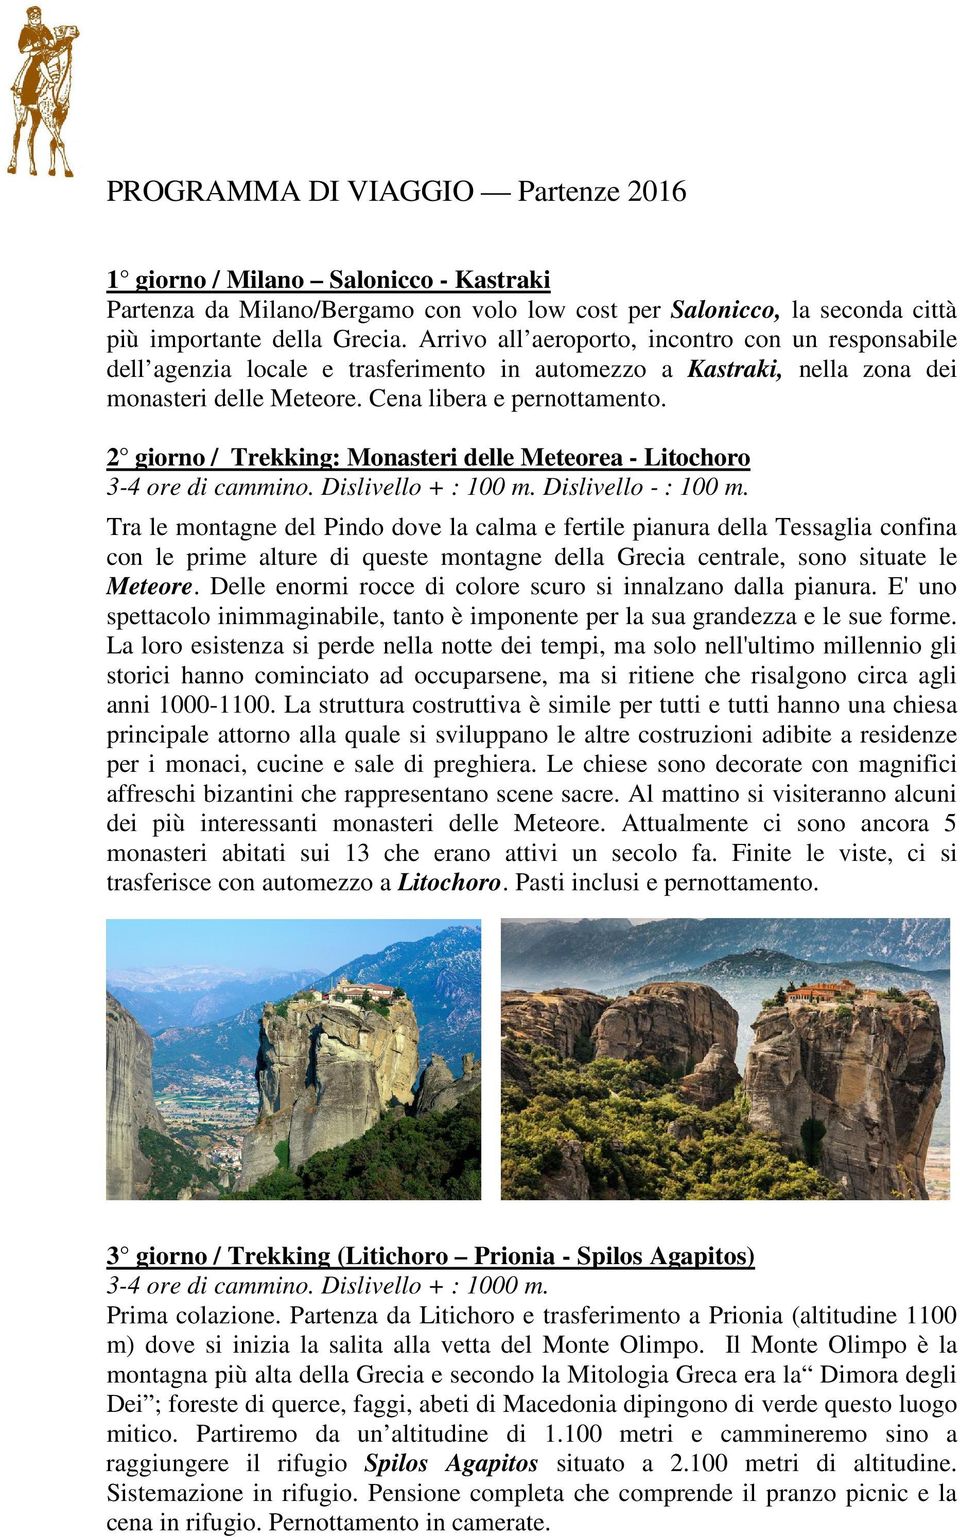 2 giorno / Trekking: Monasteri delle Meteorea - Litochoro 3-4 ore di cammino. Dislivello + : 100 m. Dislivello - : 100 m.